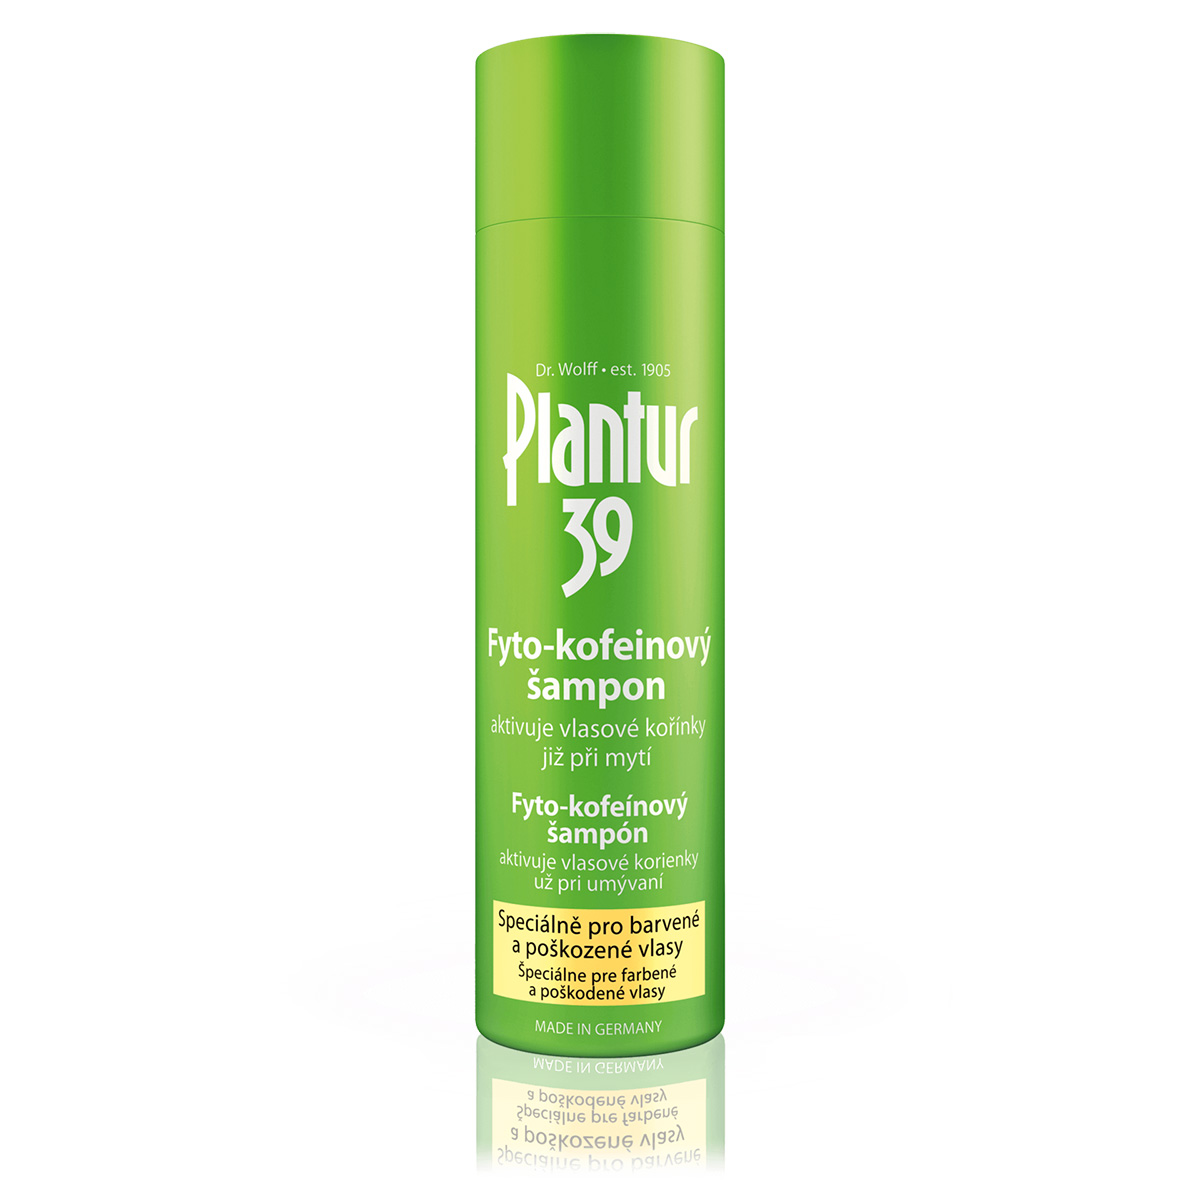 Plantur39 Kofeinový šampon Color - Plantur39